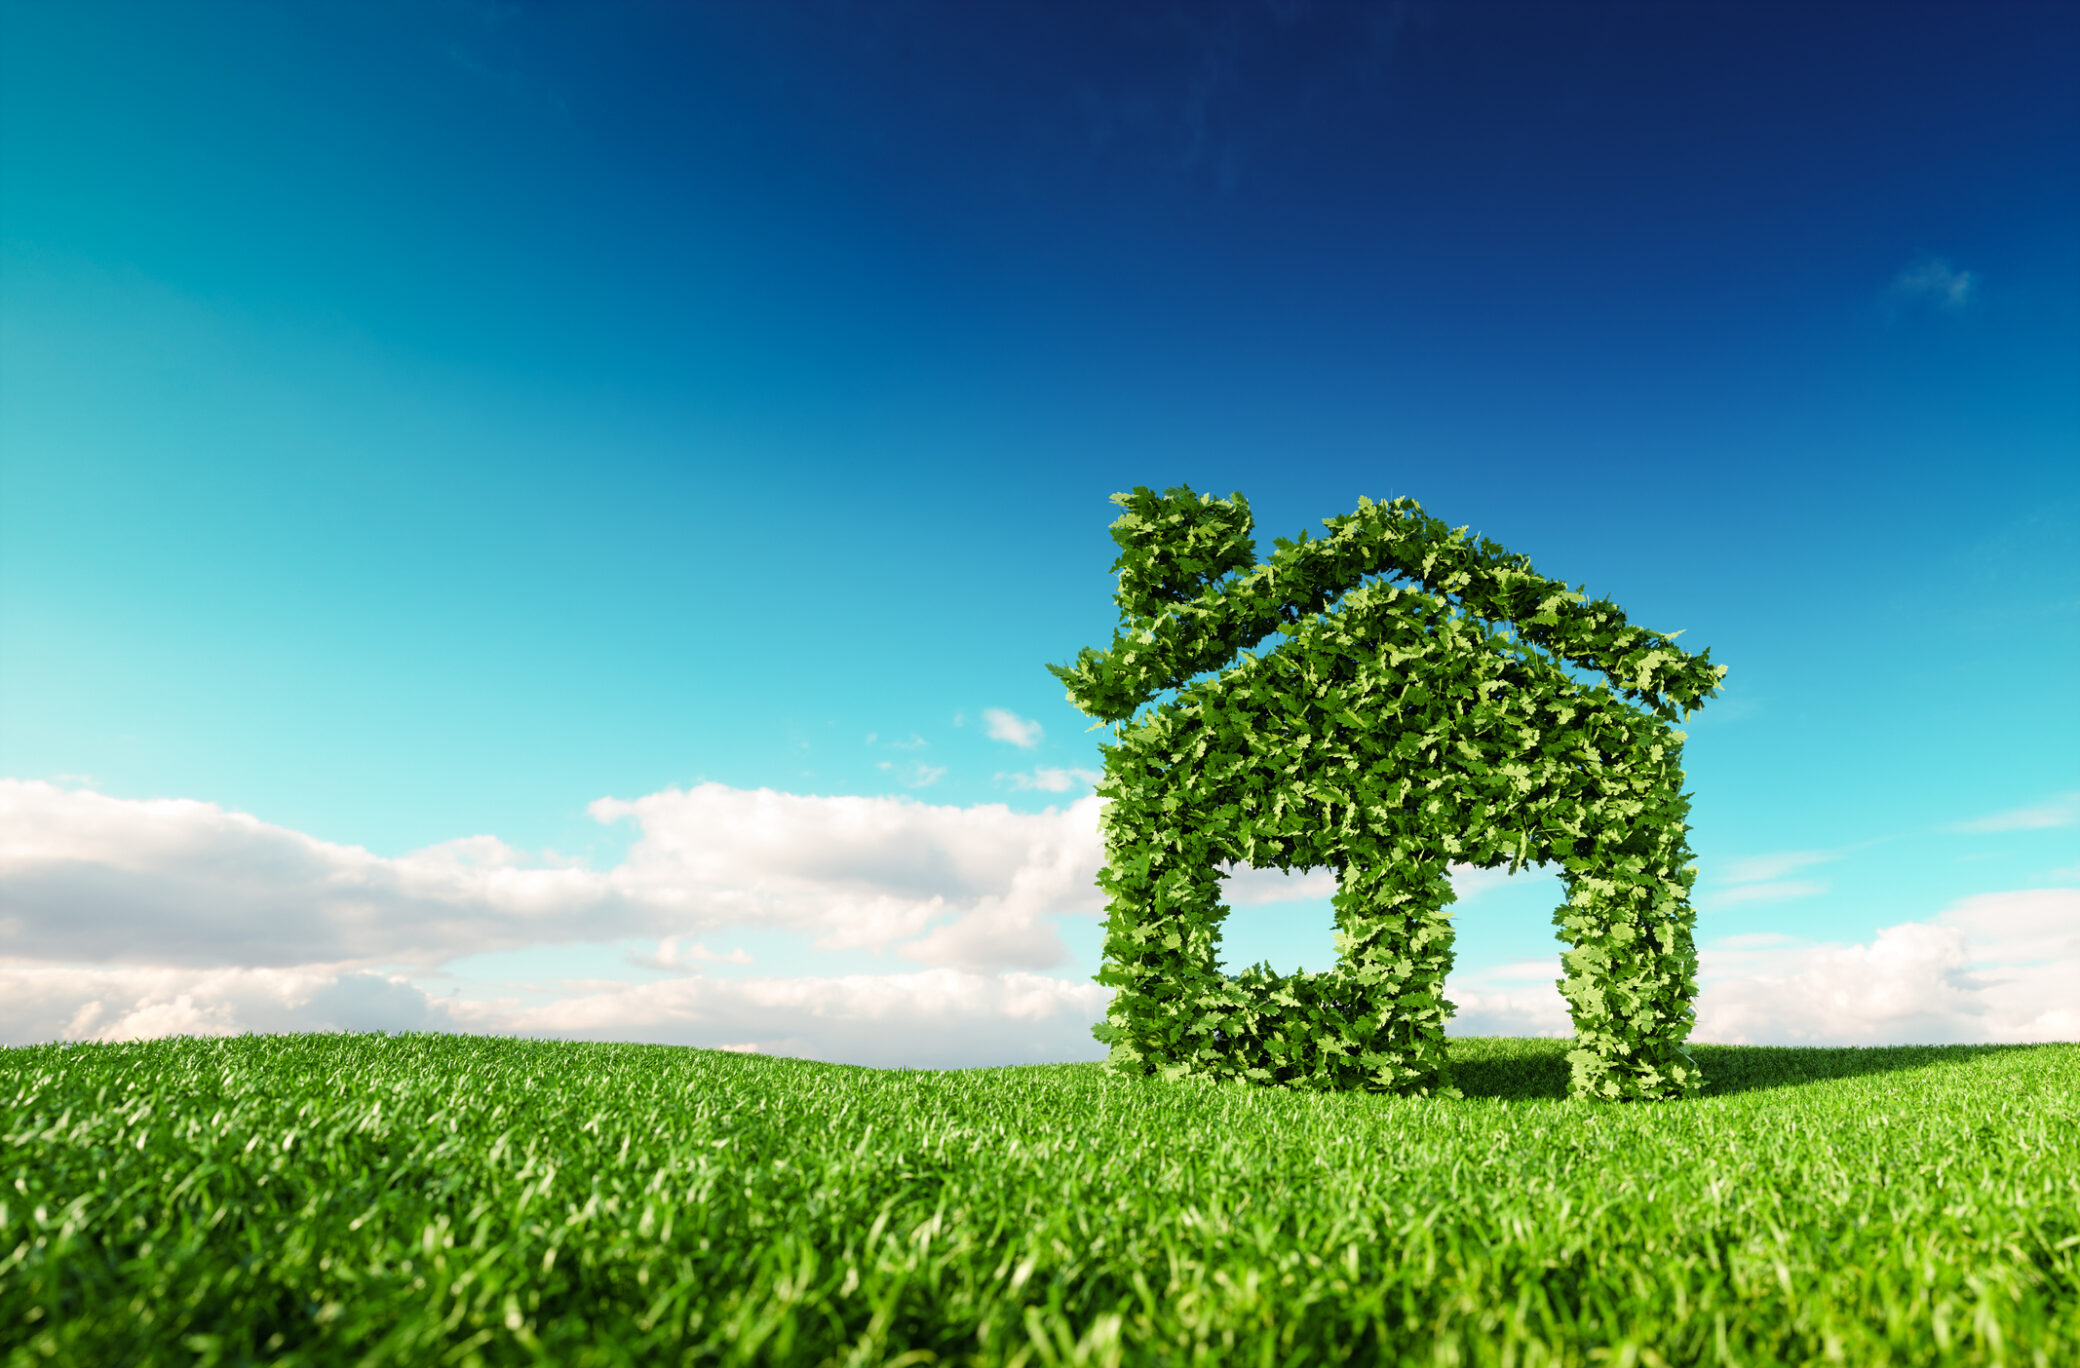 Casa verde e sustentável